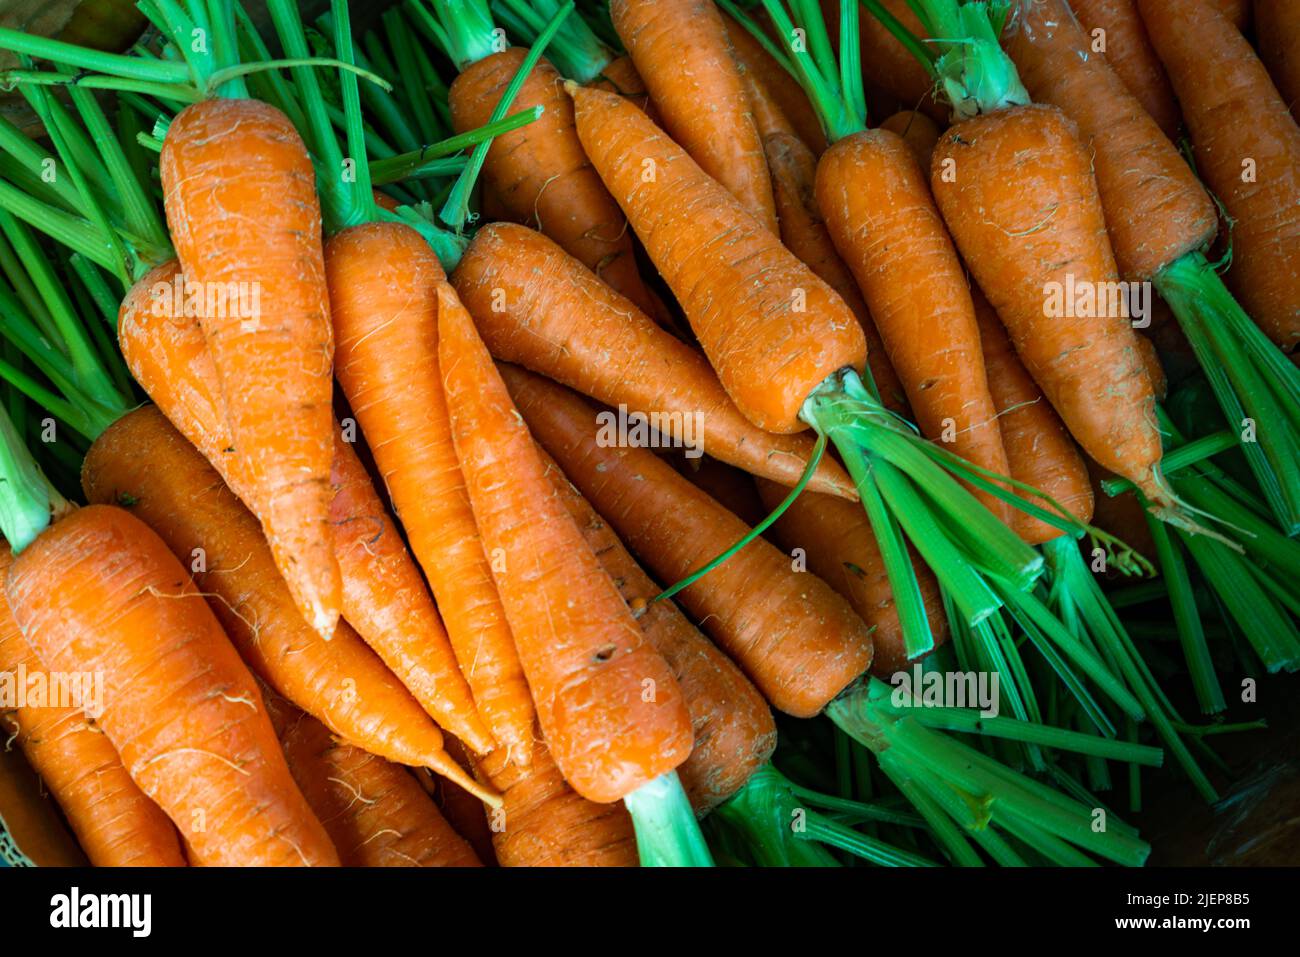 Homegrown fresh harvest of orange garden carrots. Ripe carrots Stock Photo